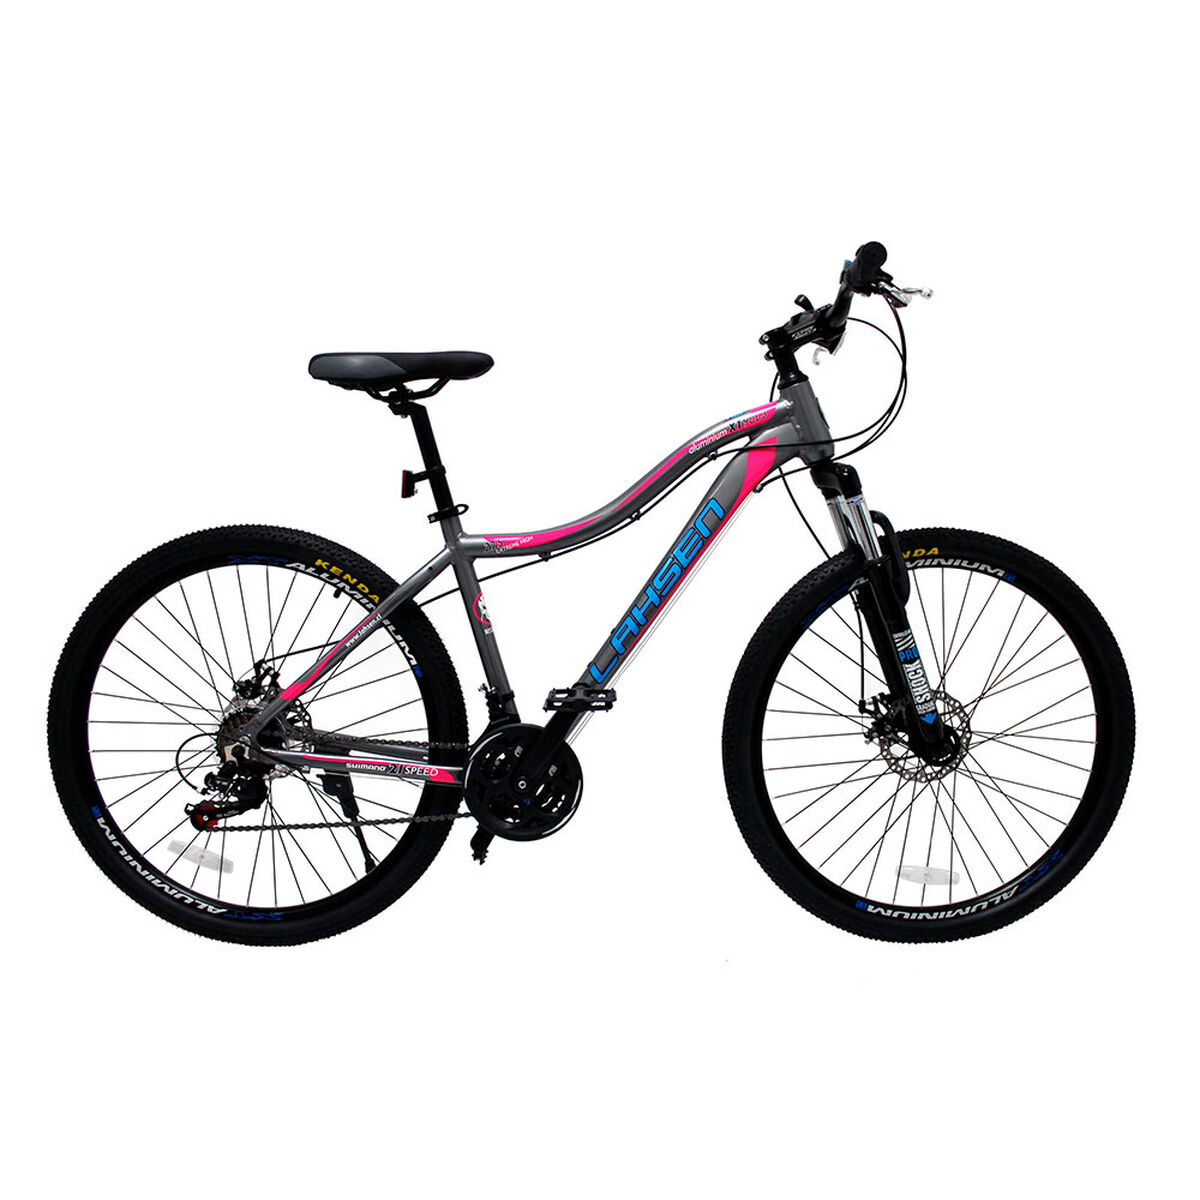 Bicicleta Lahsen Mujer Xt 9003  Aro 27.5